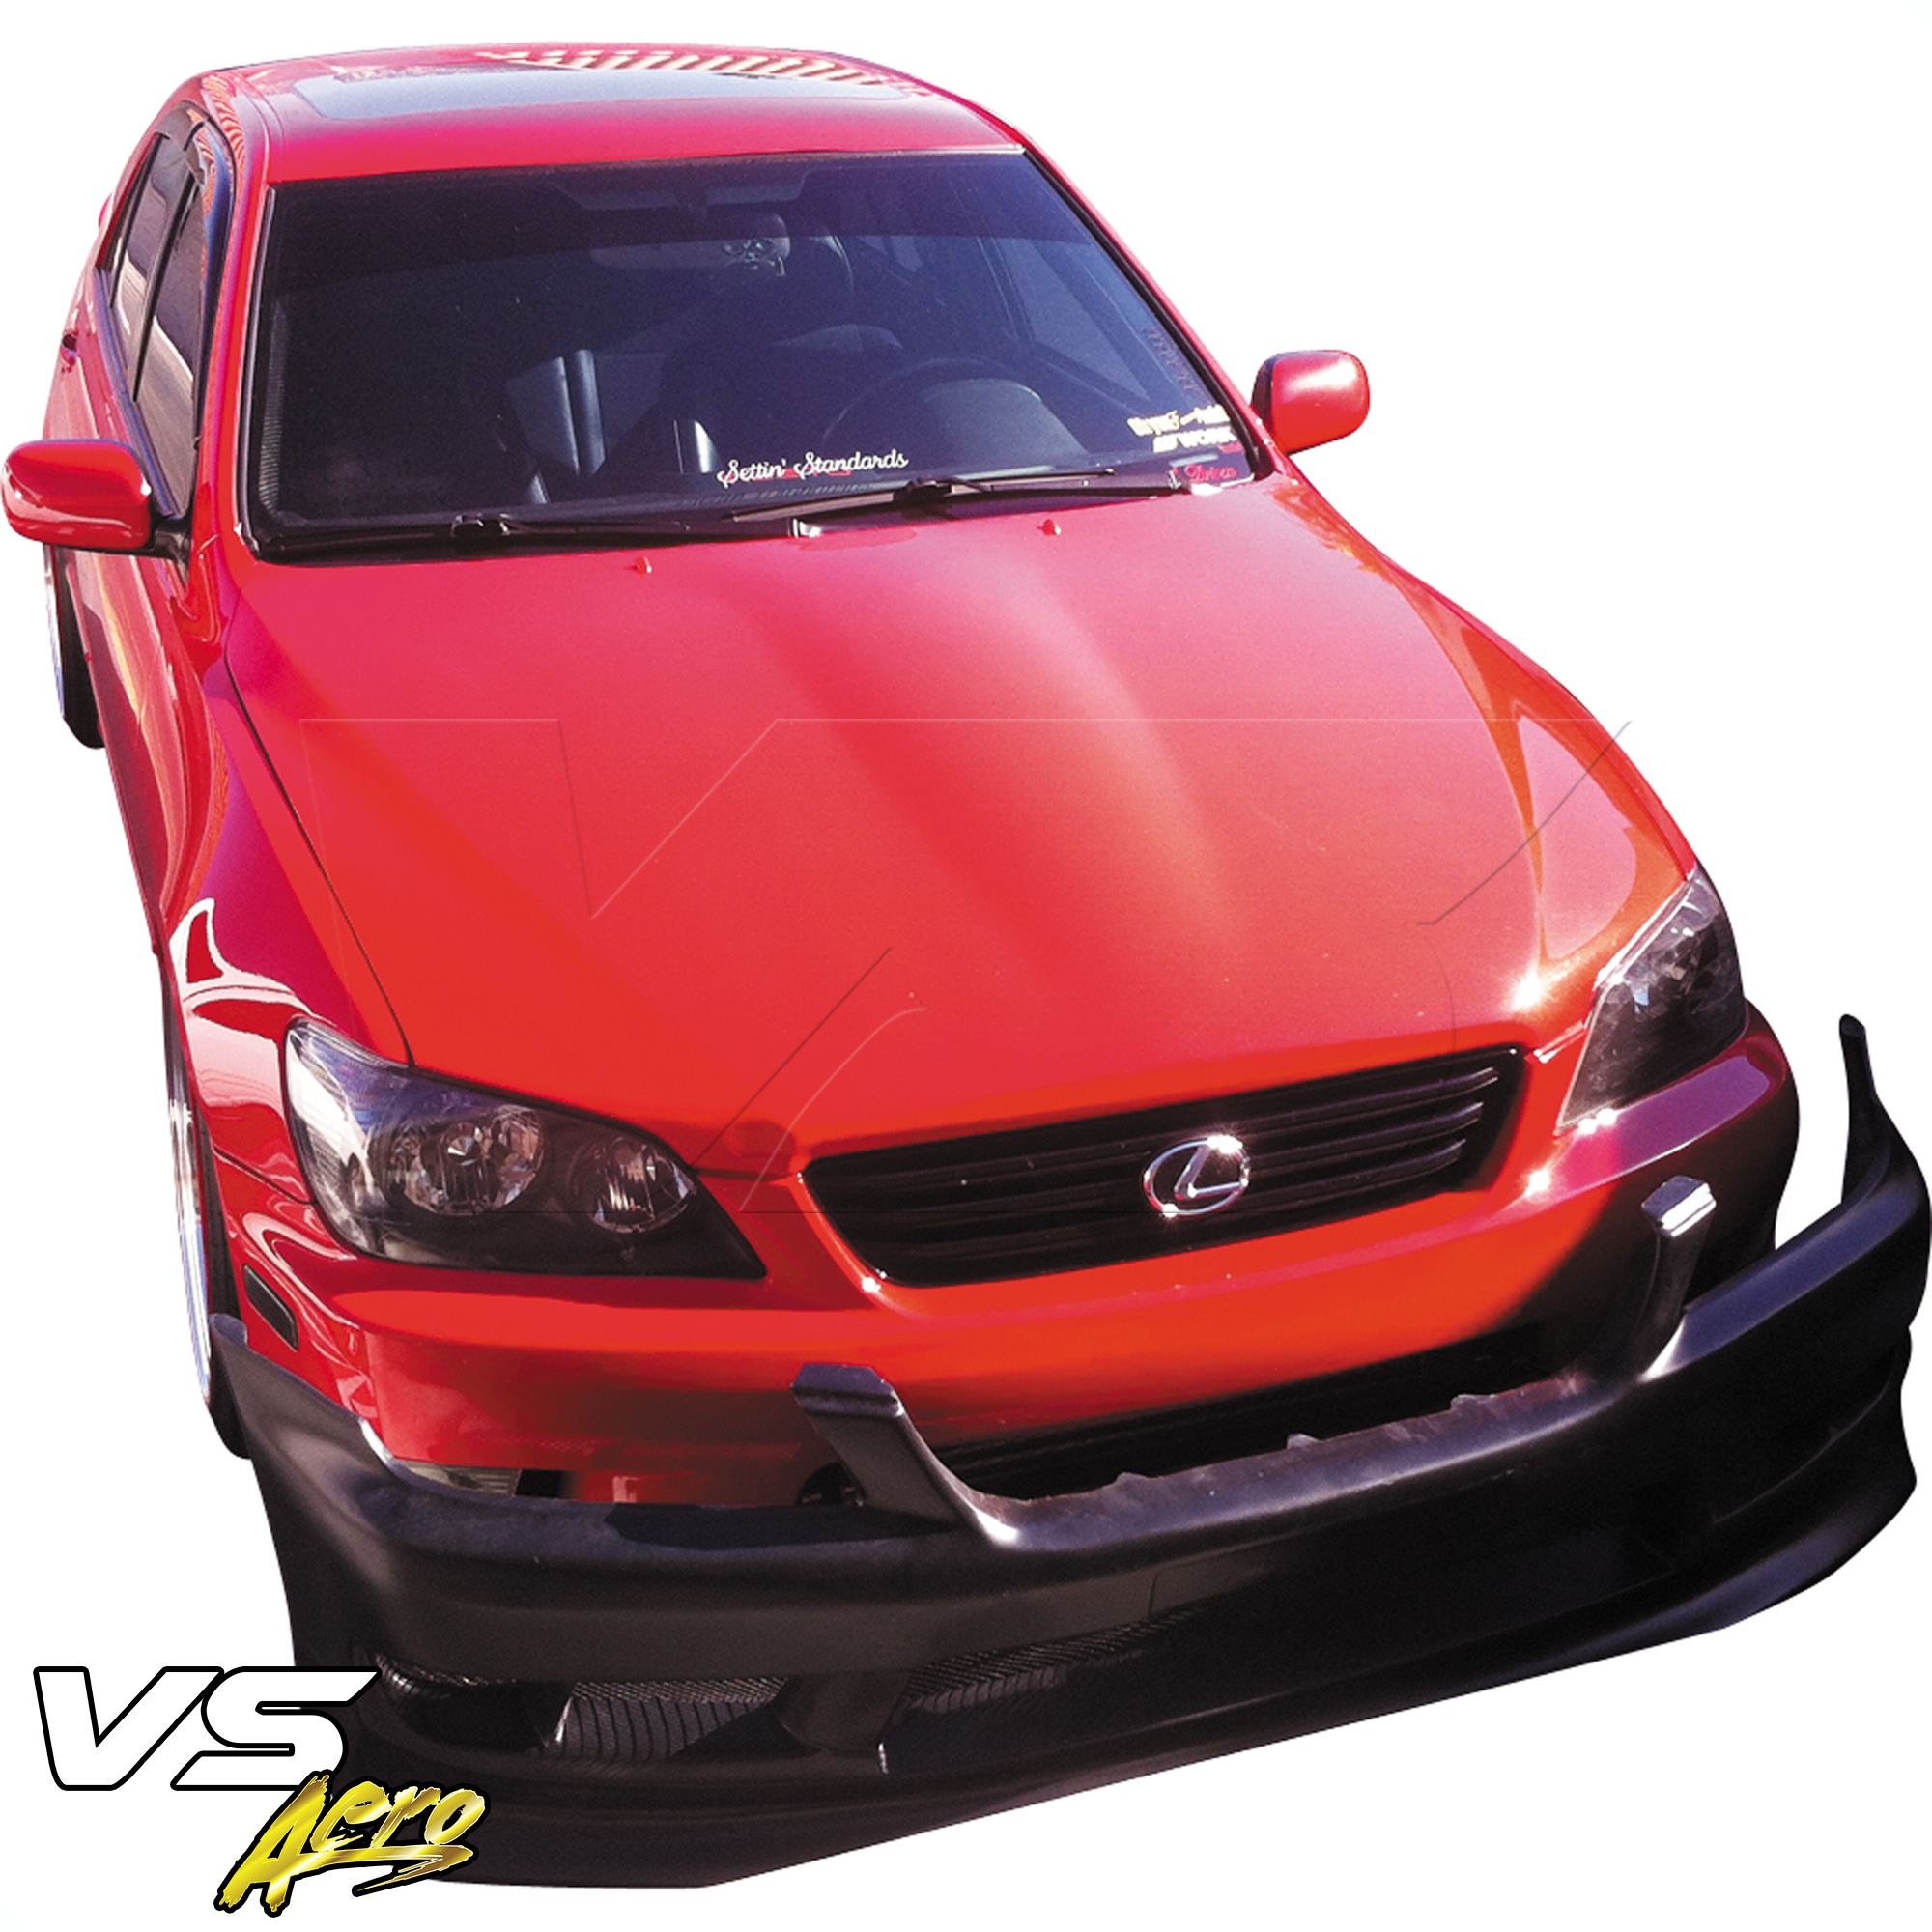 VSaero FRP VERT Front Bumper > Lexus IS Series IS300 SXE10 2001-2005 - Image 14